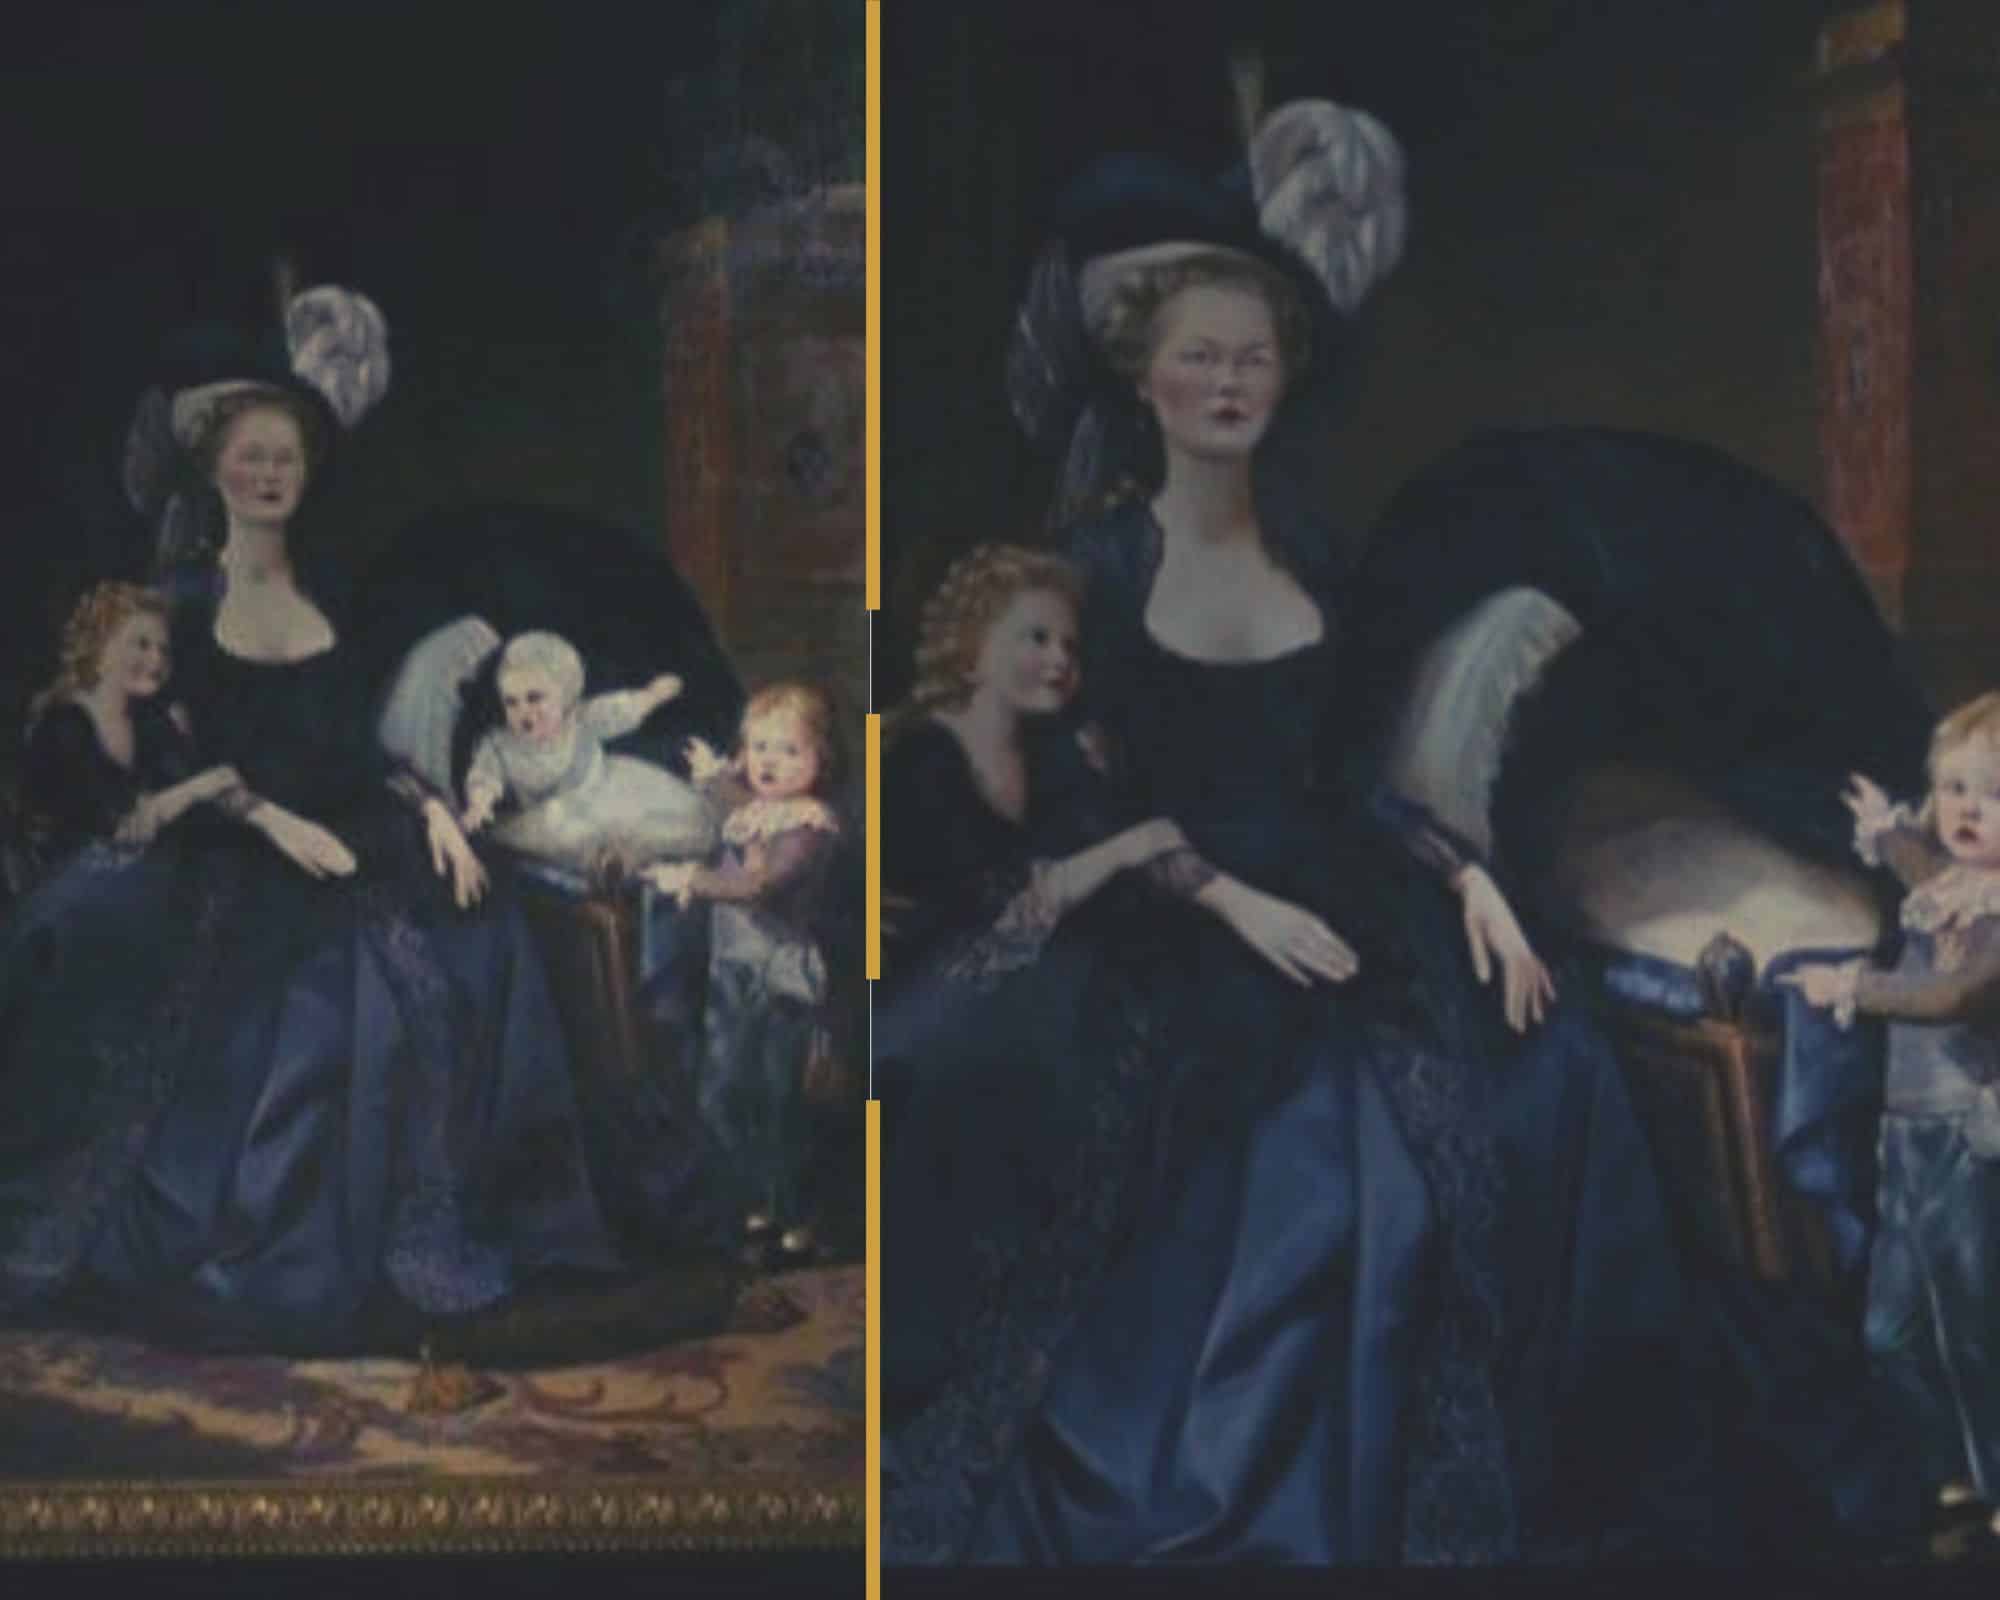 Montage des tableaux présentés dans le film de Coppola sur Marie-Antoinette montrant la reine avec ses enfants